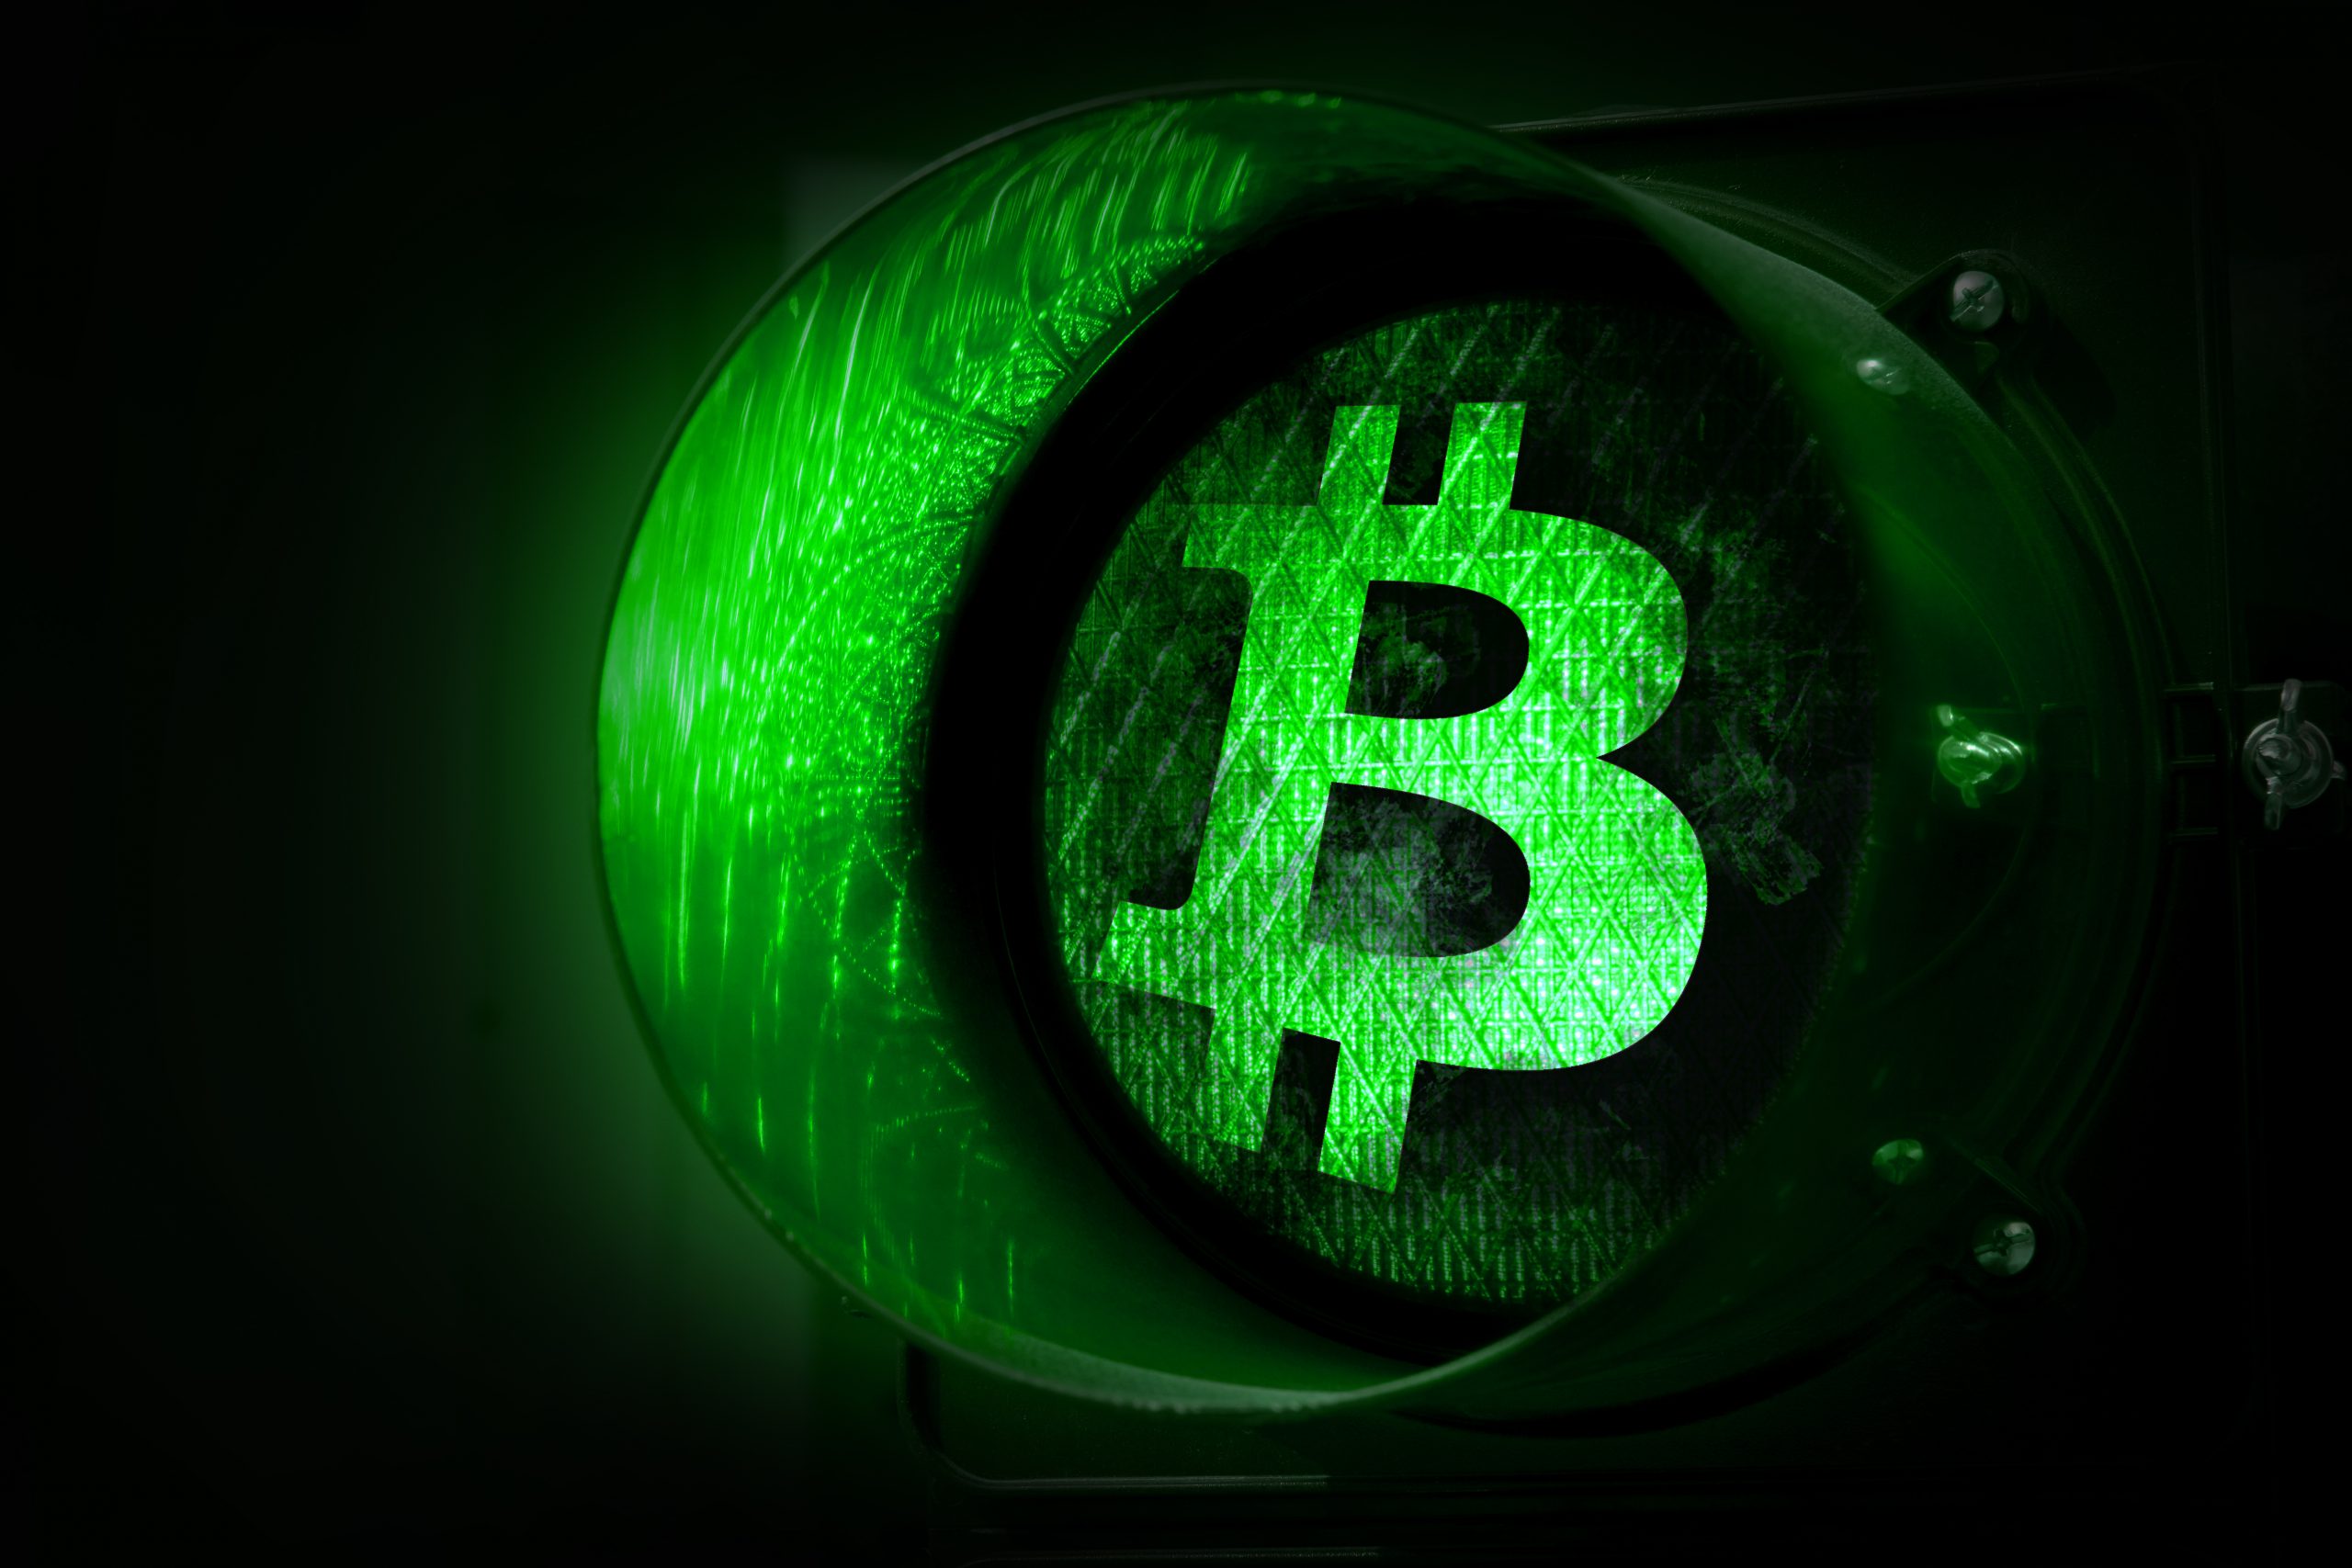 Nach Kurskorrektur: Bitcoin dreht auf – Krypto-Markt leuchtet grün